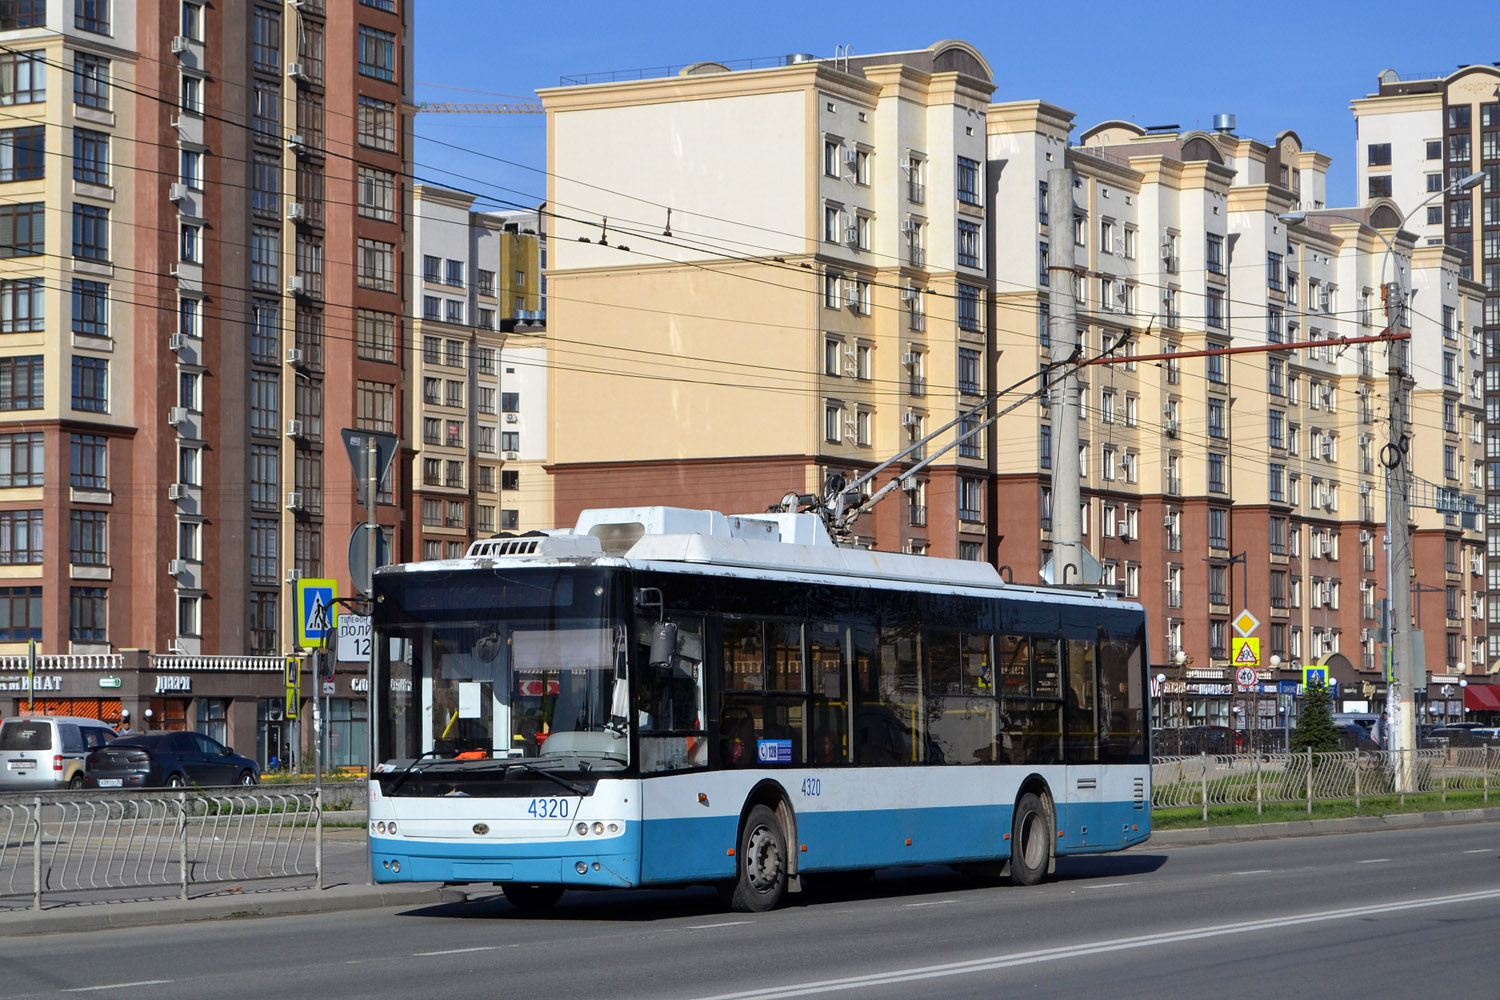 Crimean trolleybus, Bogdan T70110 № 4320